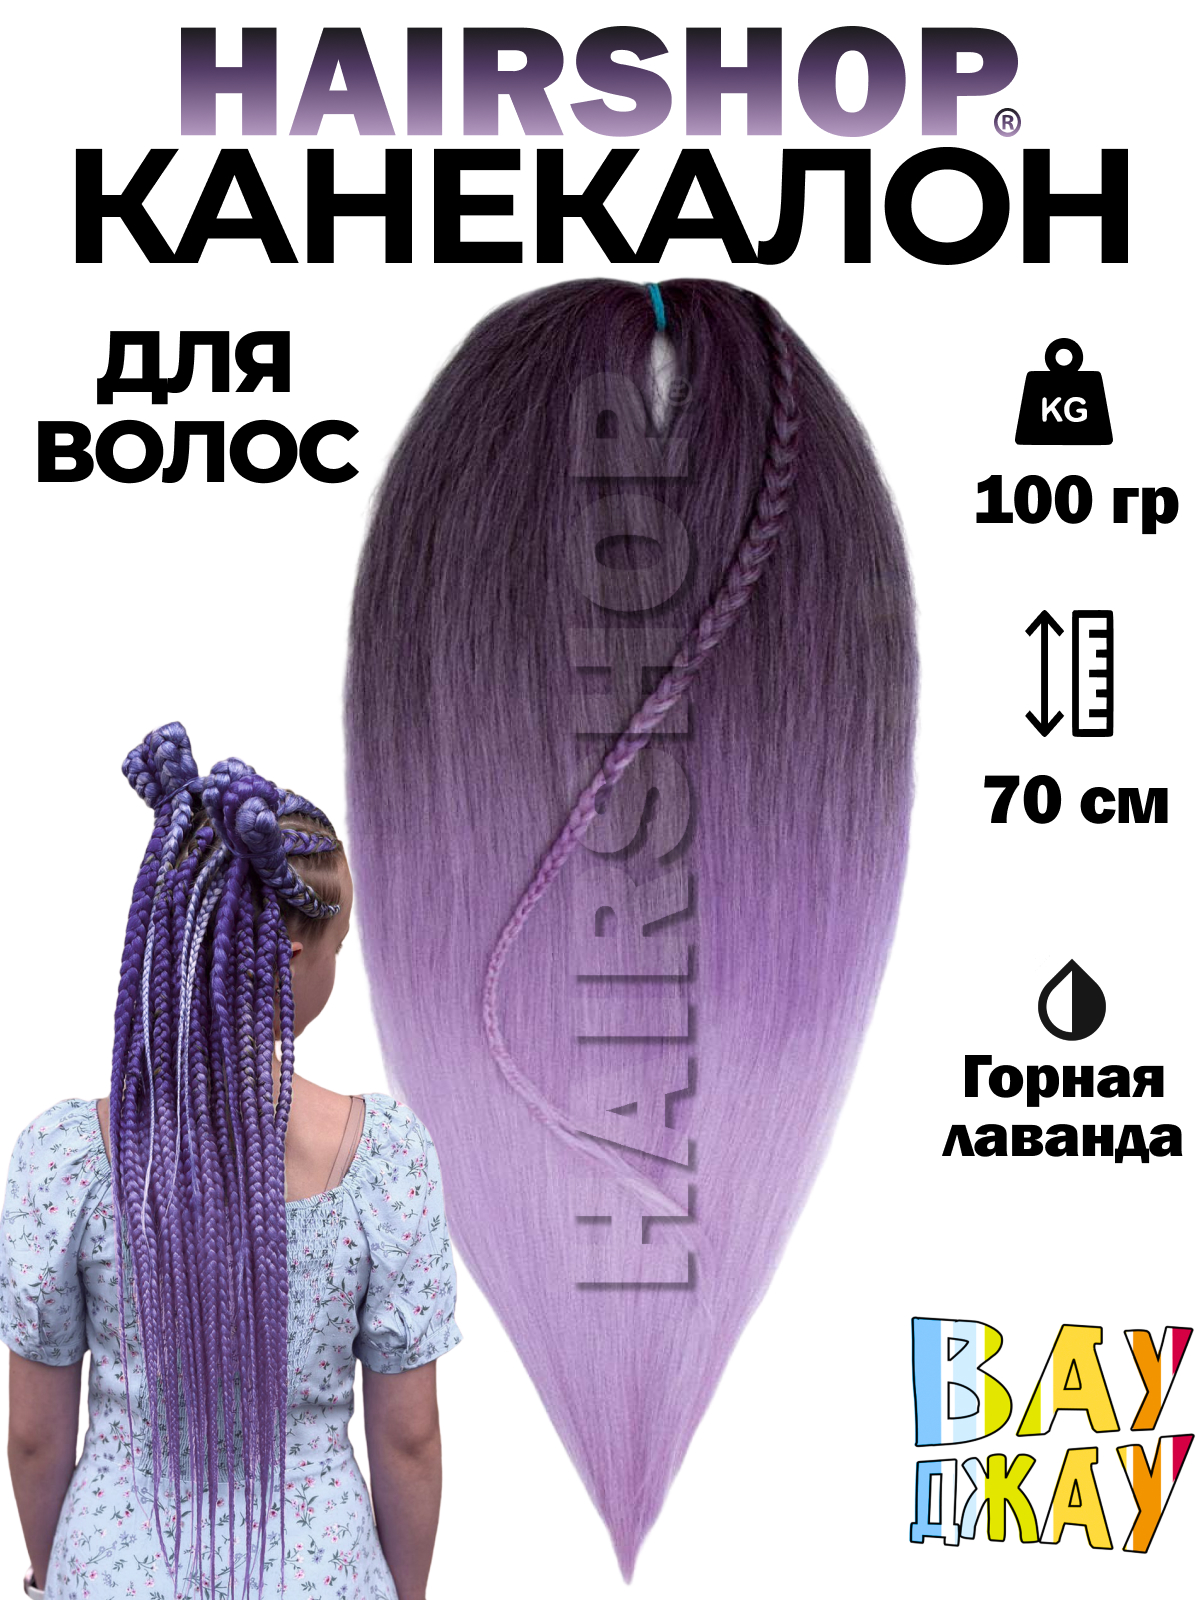 Канекалон Hairshop Вау Джау Горная лаванда 1,4м 100 г манекен для причесок курс по обучению плетению кос 10 уроков линком мп 1